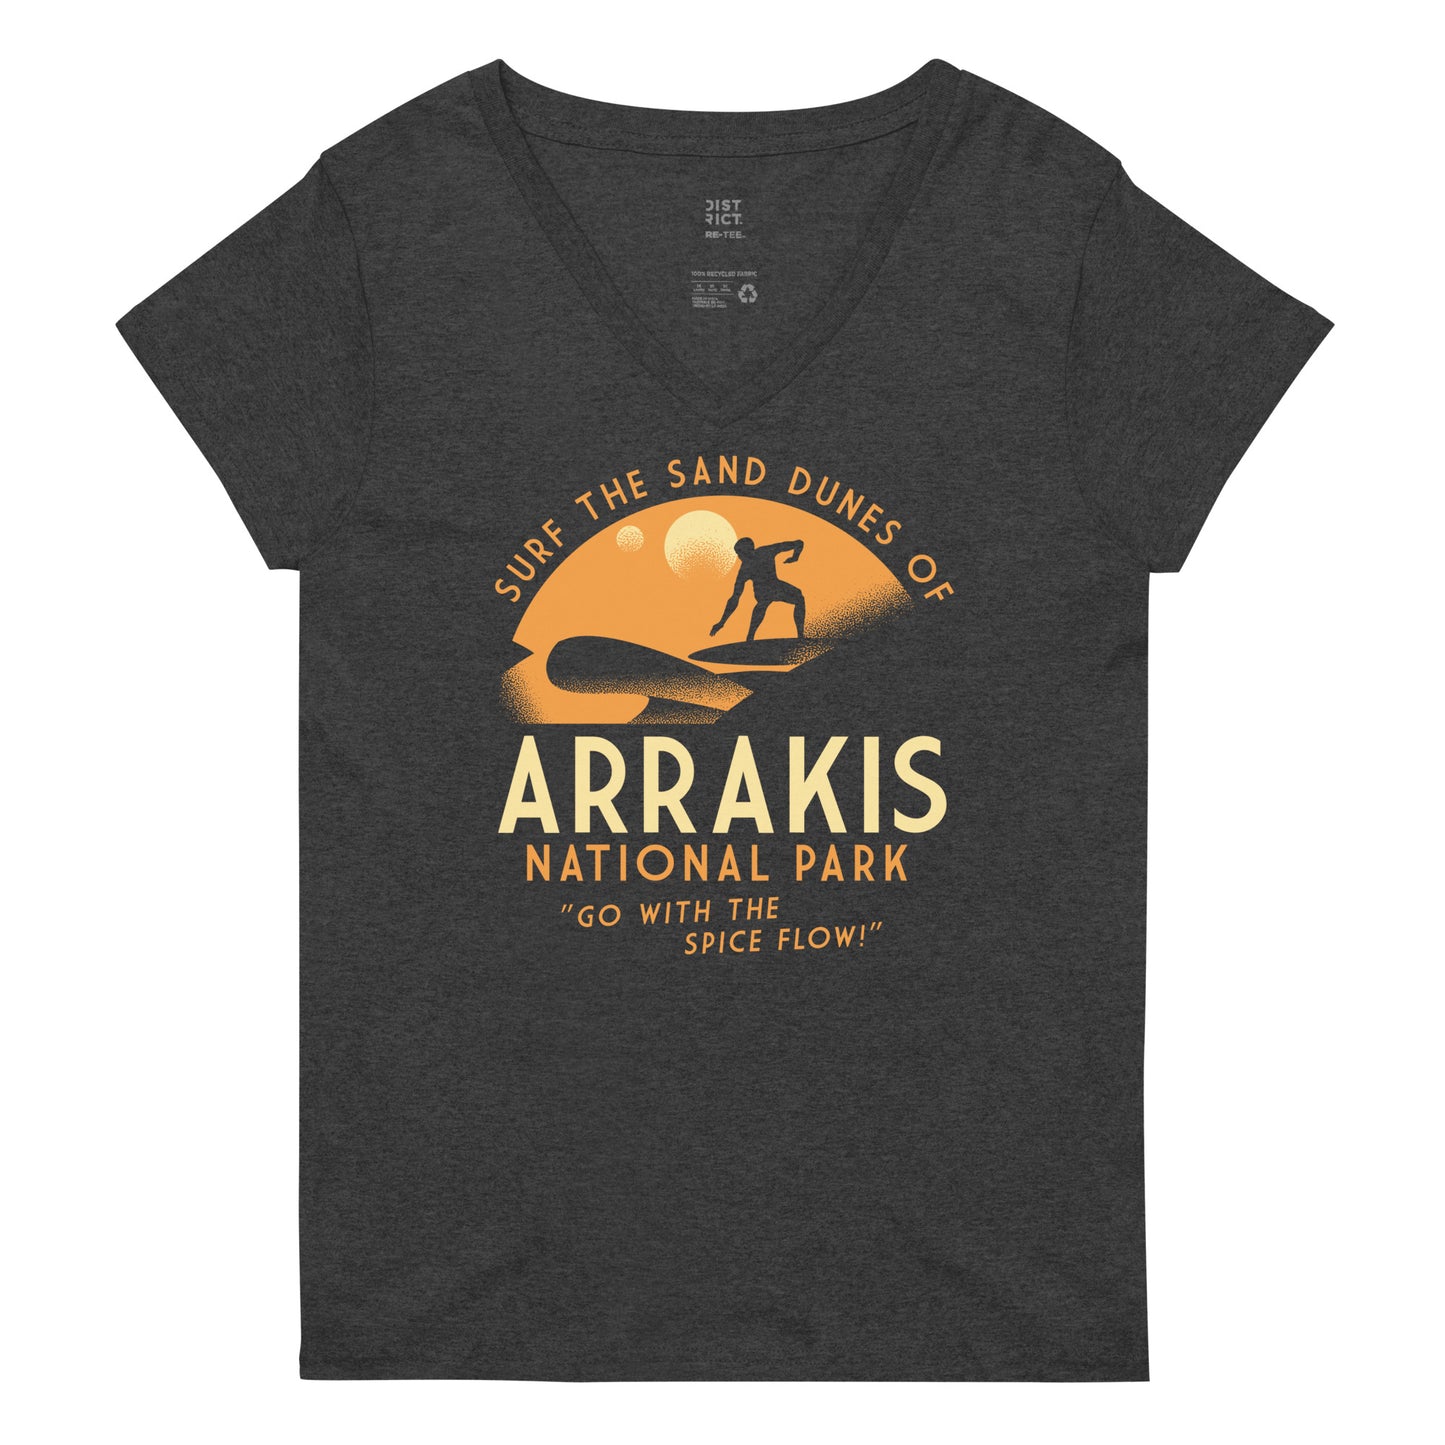 Arrakis National Park Women's V-Neck Tee